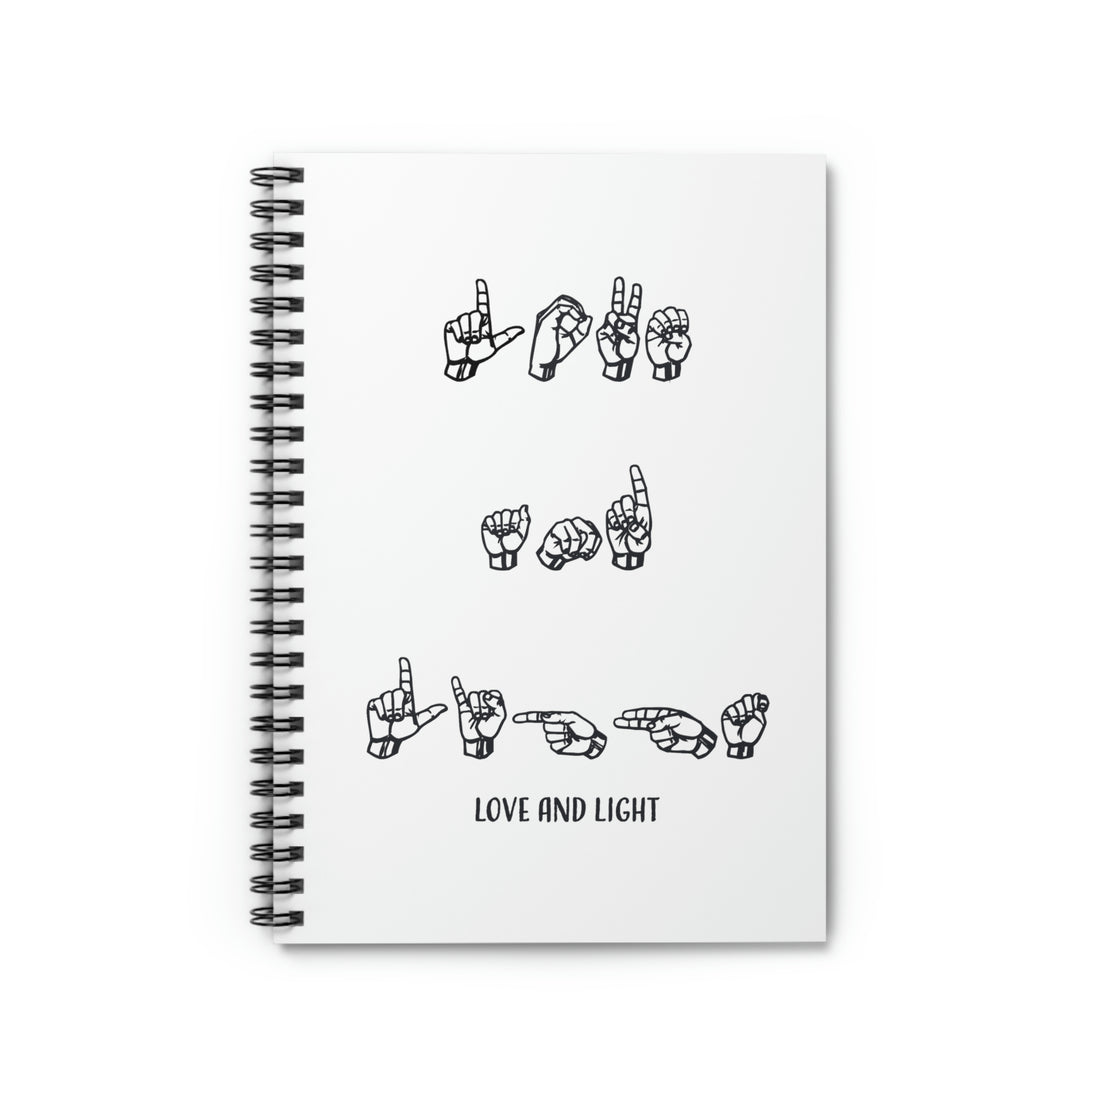 ASL - Love &amp; Light - Spiral Notebook - Ruled Line